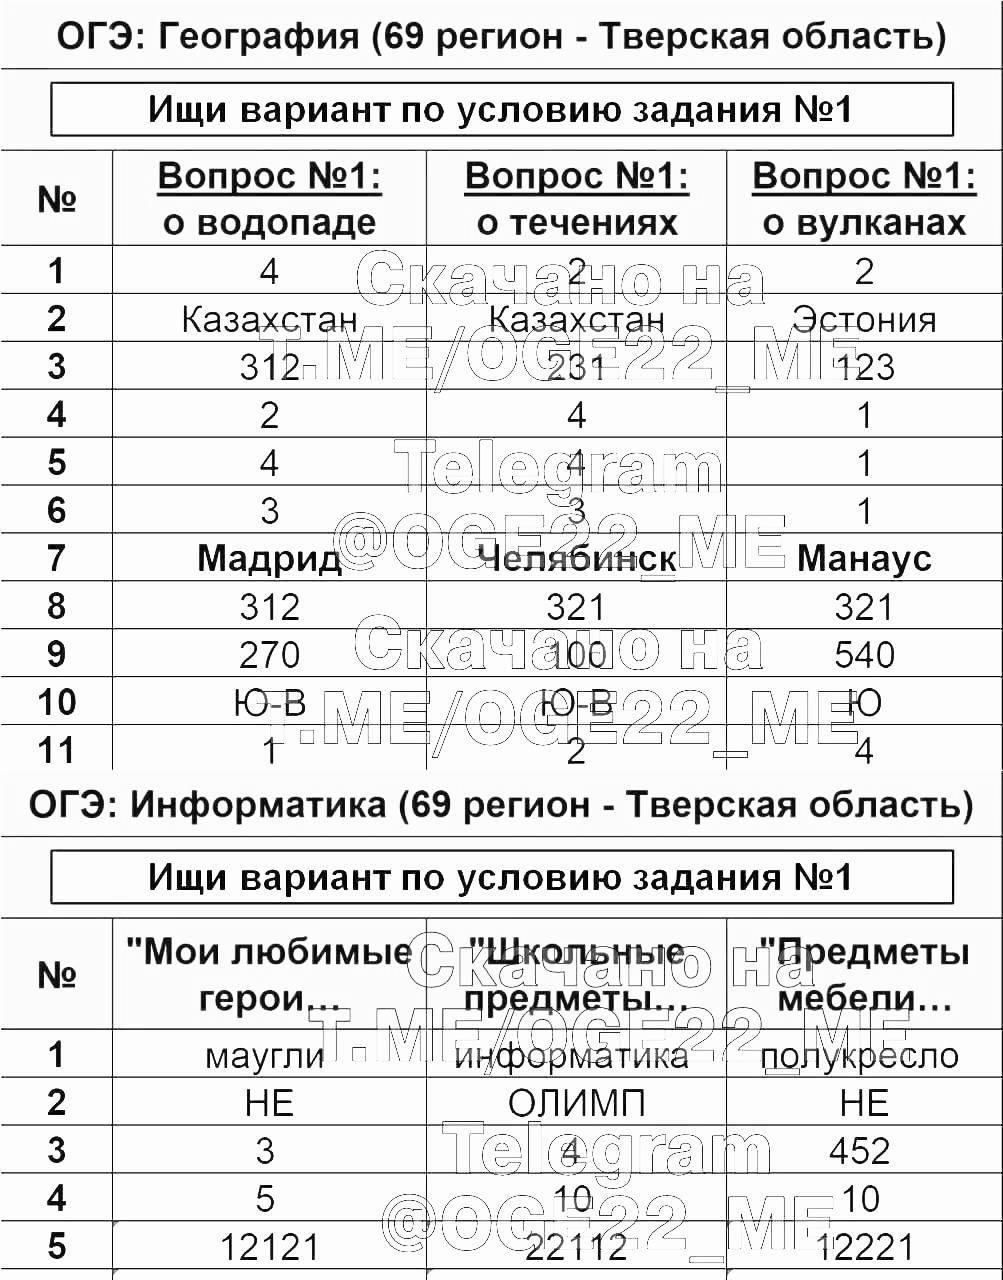 Телеграмм ответы на огэ по русскому языку фото 13